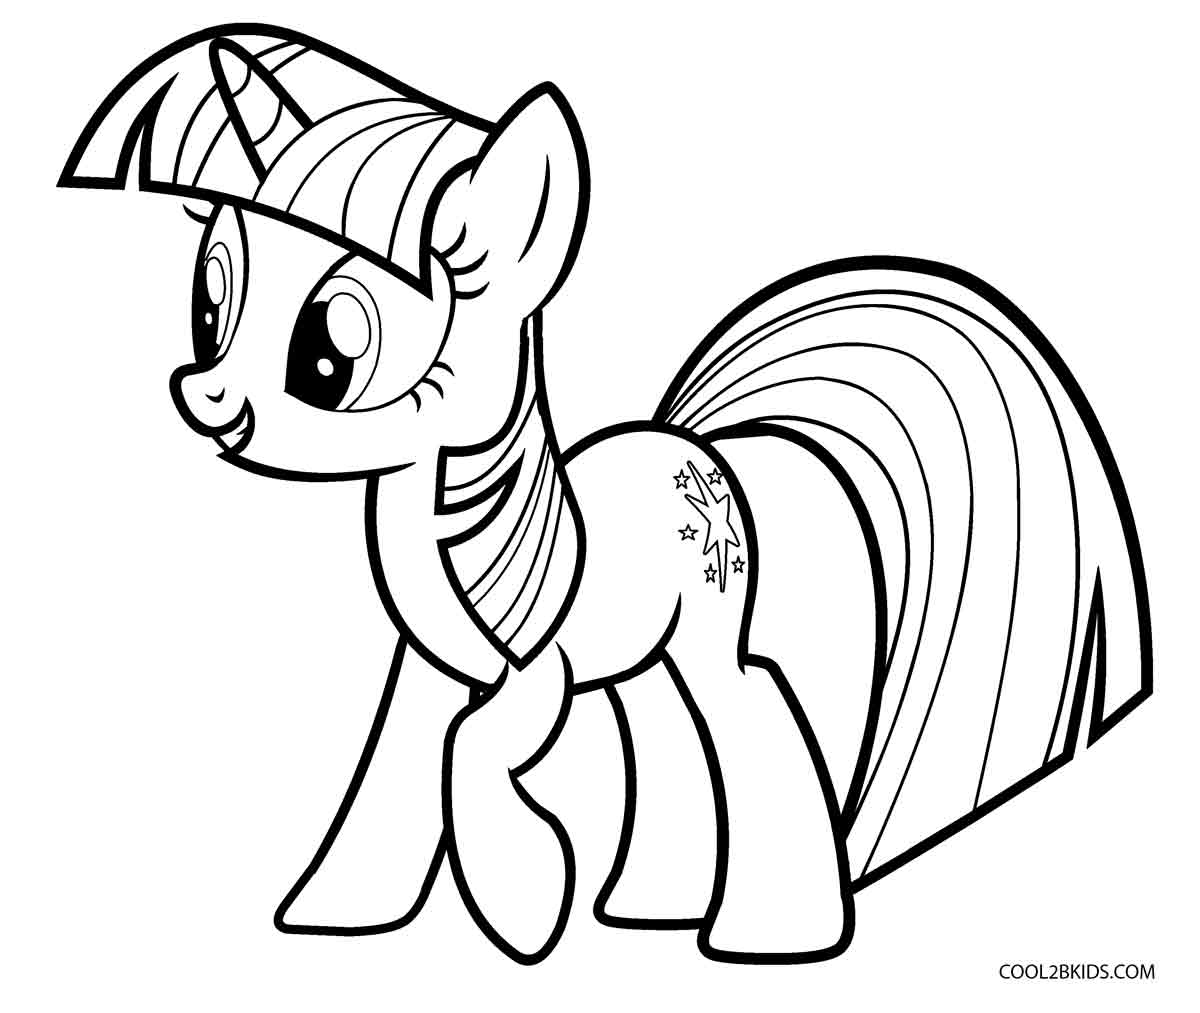 Ausmalbilder My Little Pony   Malvorlagen kostenlos zum ausdrucken